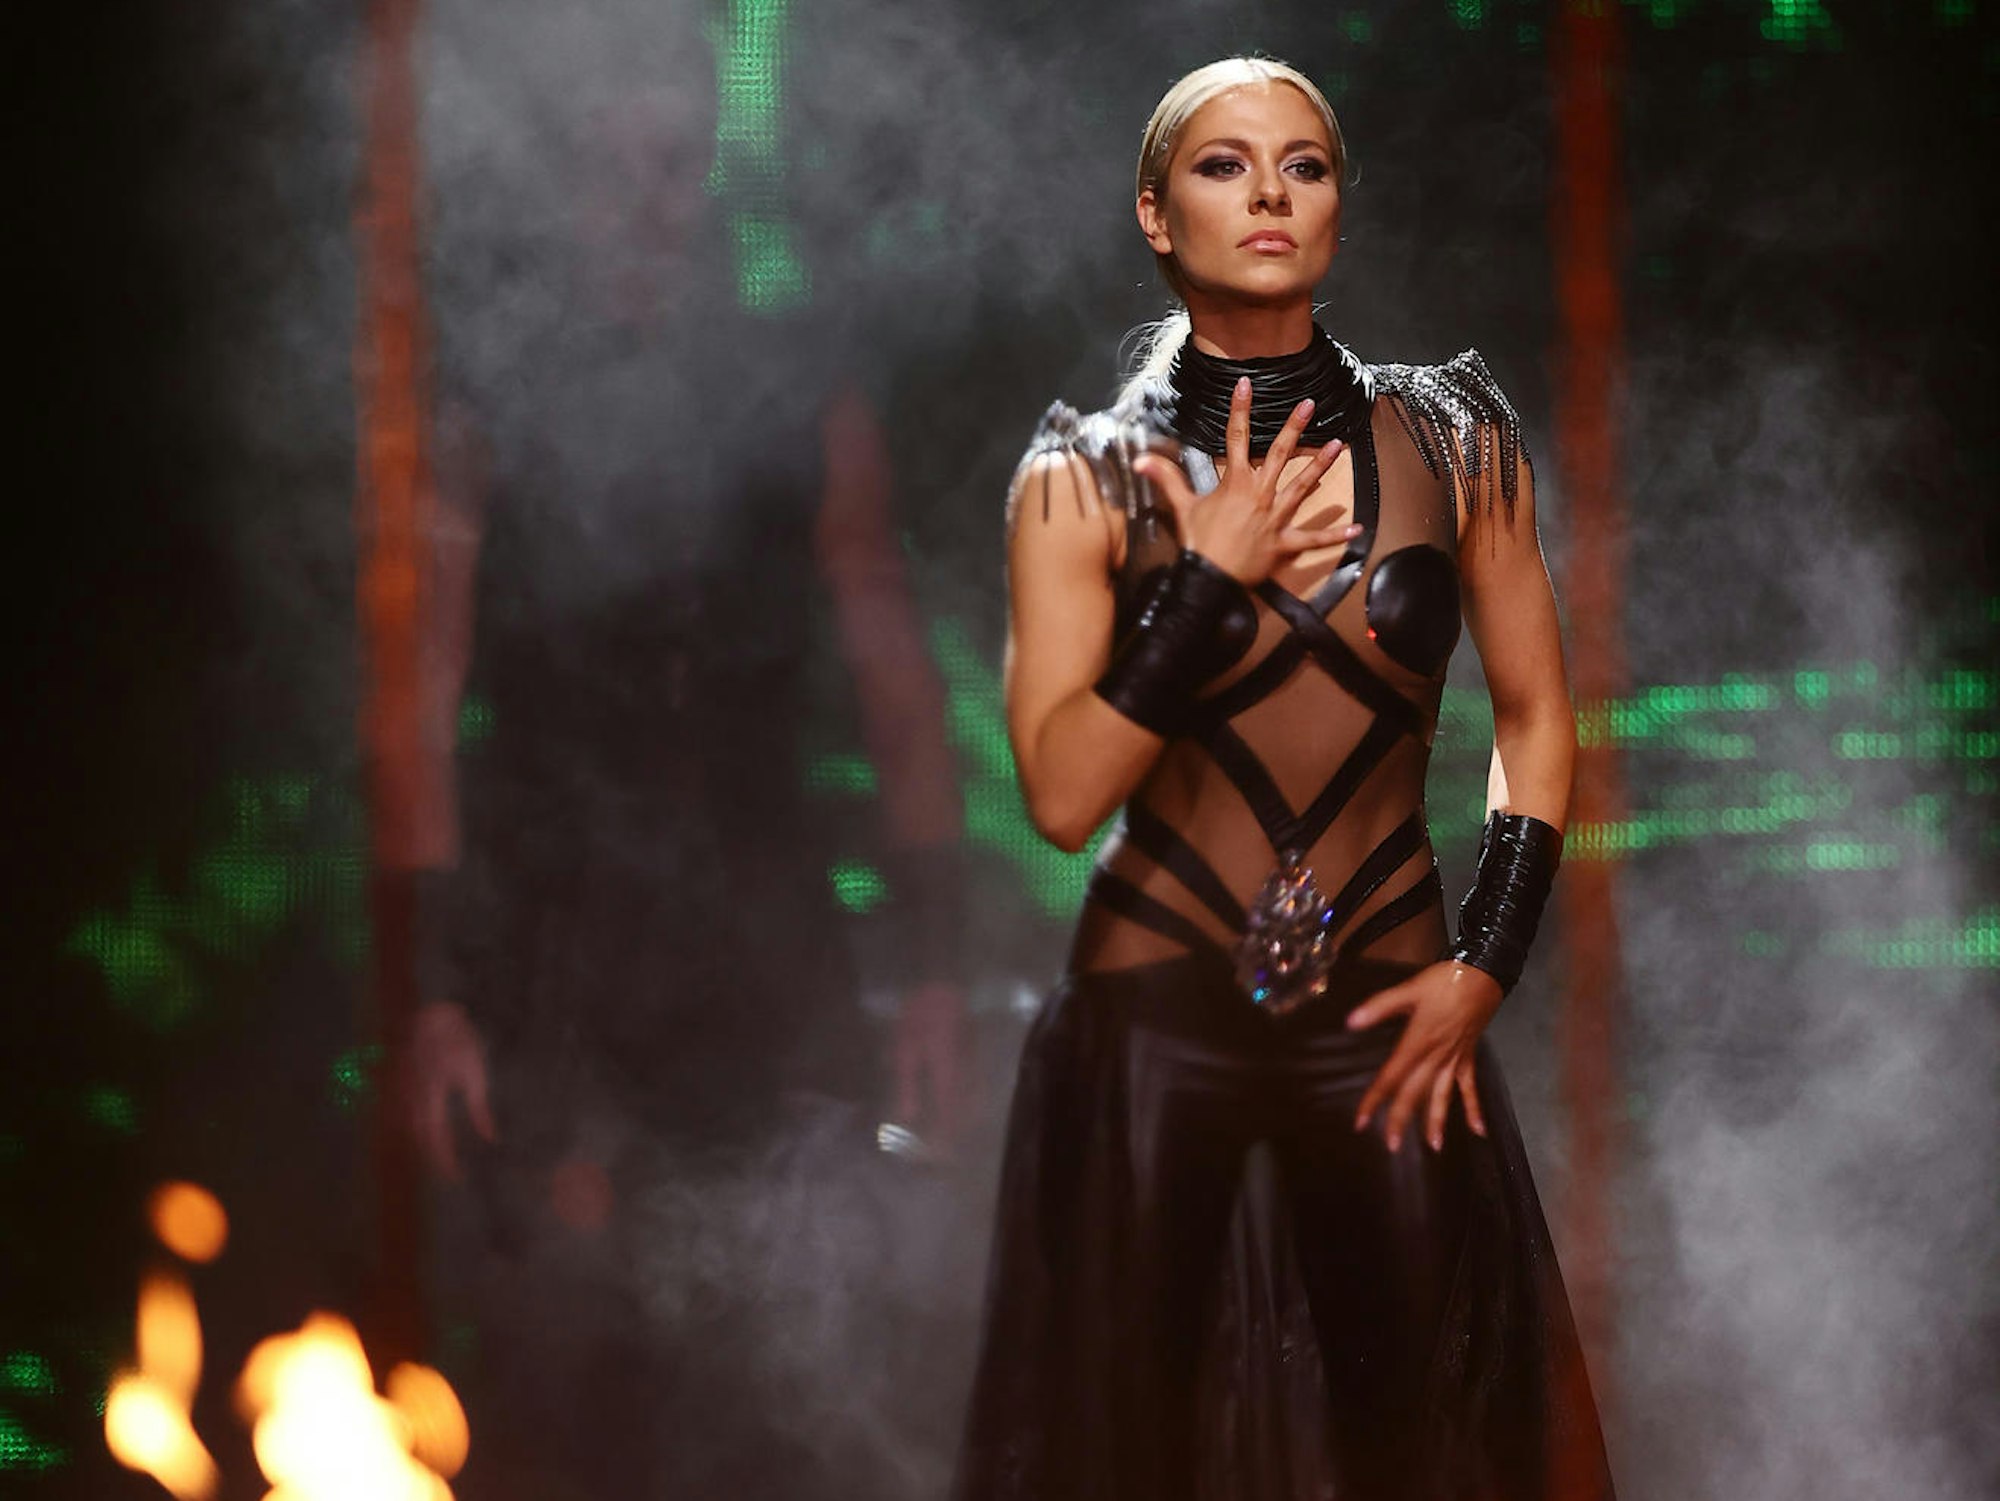 Schauspielerin Valentina Pahde steht bei der RTL-Tanzshow "Let's Dance" in einem schwarzen Kleid auf der Bühne und tanzt. Sie schaffte es bei der RTL-Tanzshow bis ins Finale.